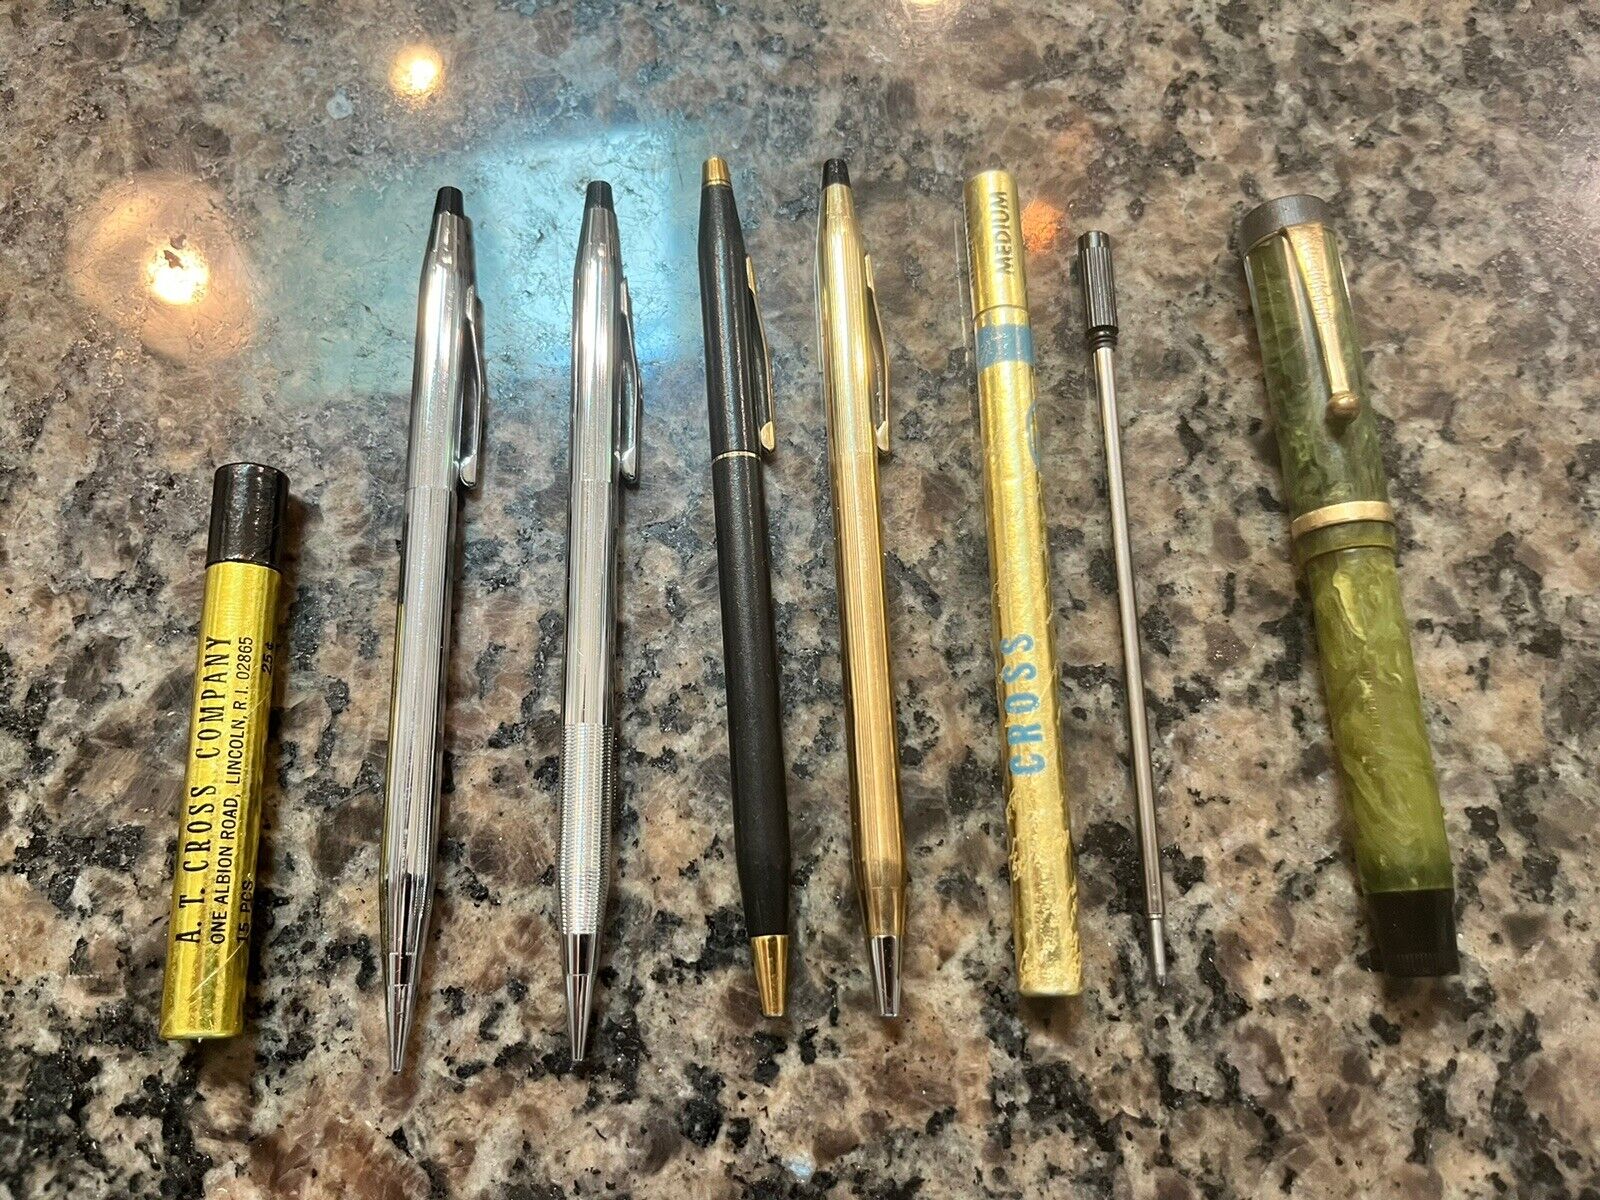 Vintage Lot of 4 Cross Ball Point Pens & Mechanical Pencils - 1 Parker Pen